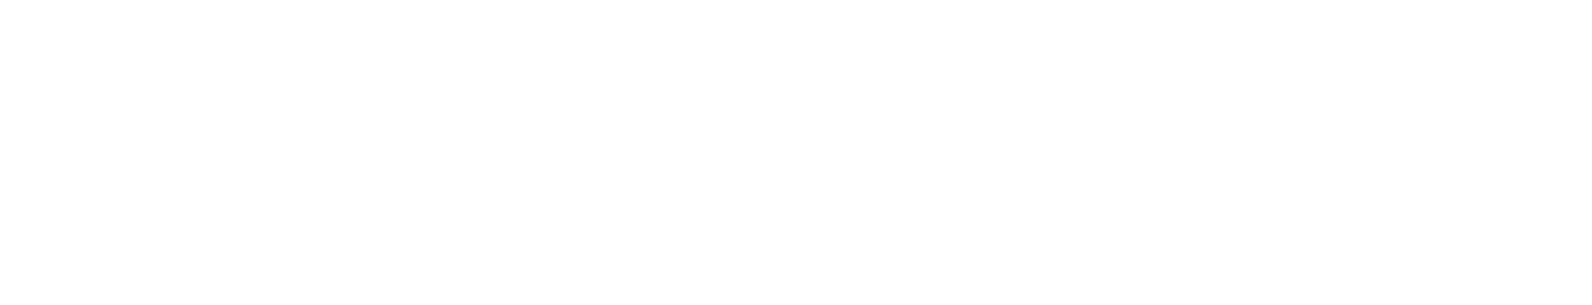 Adicet Bio logo large for dark backgrounds (transparent PNG)